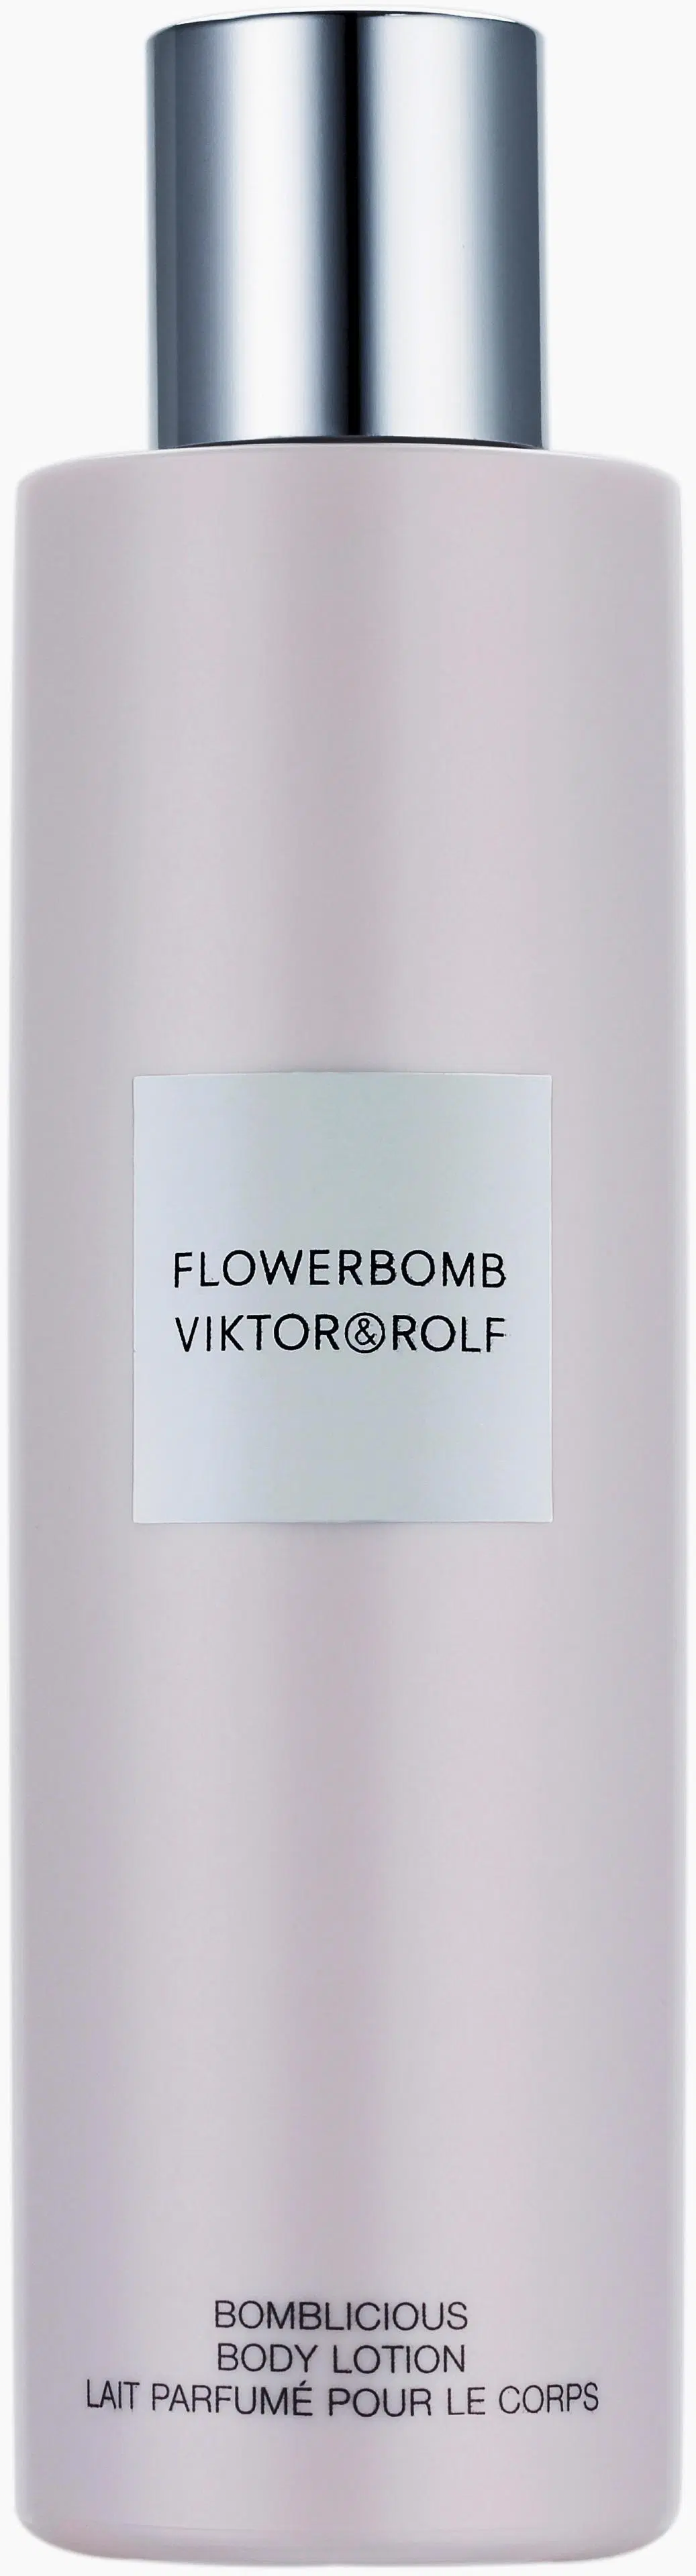 Viktor&Rolf Flowerbomb Body Lotion kosteusvoide vartalolle 200 ml